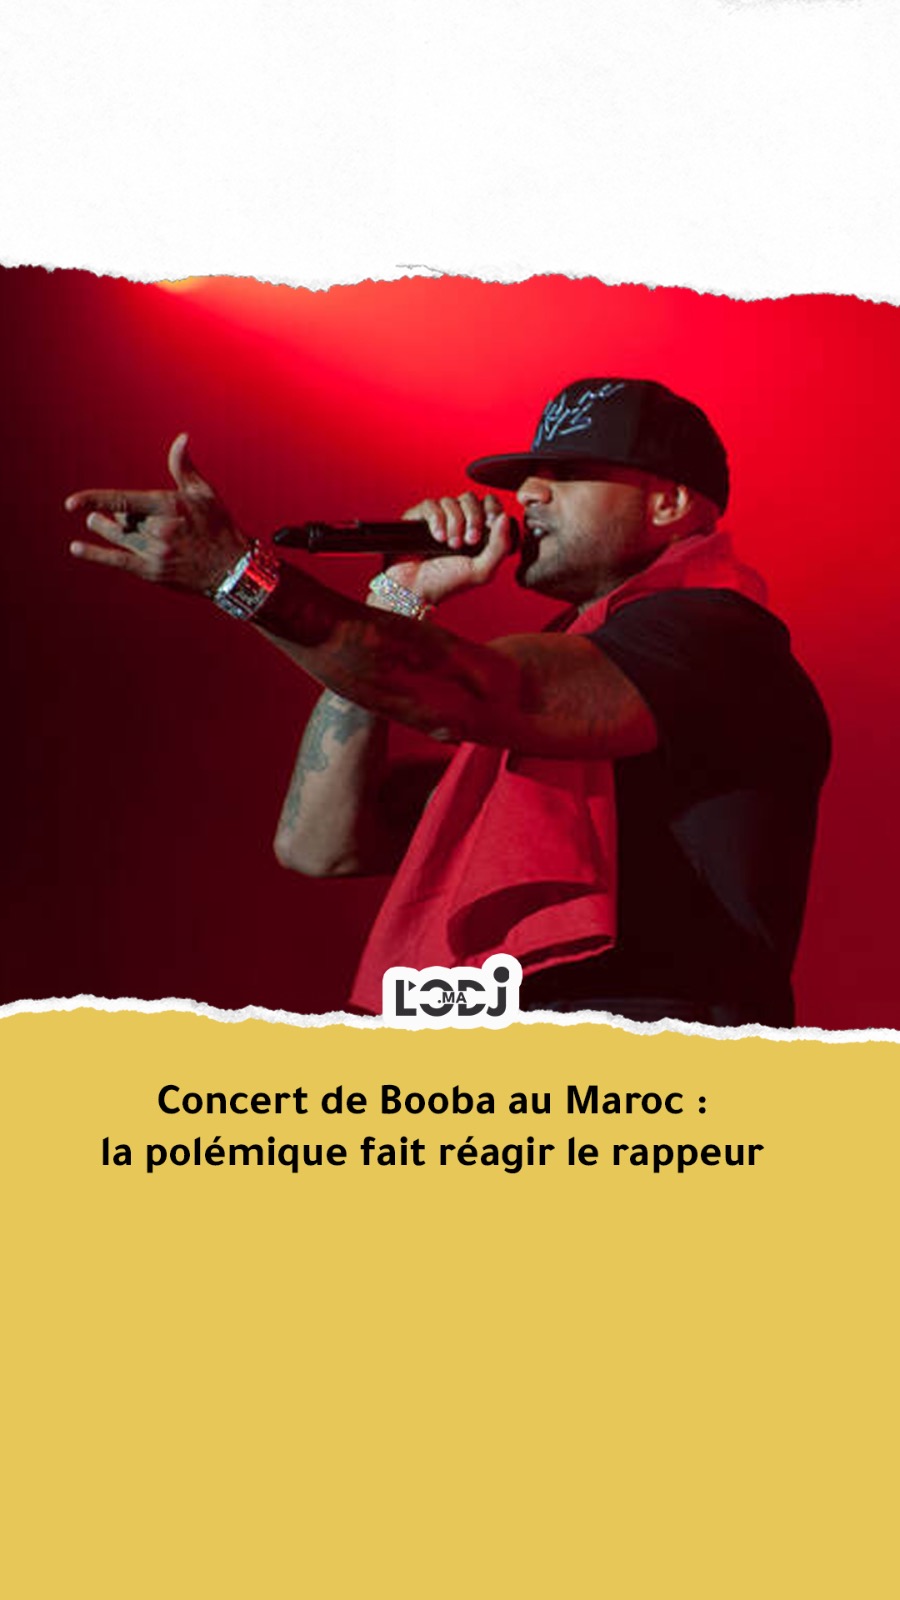 Concert de Booba au Maroc : la polémique fait réagir le rappeur